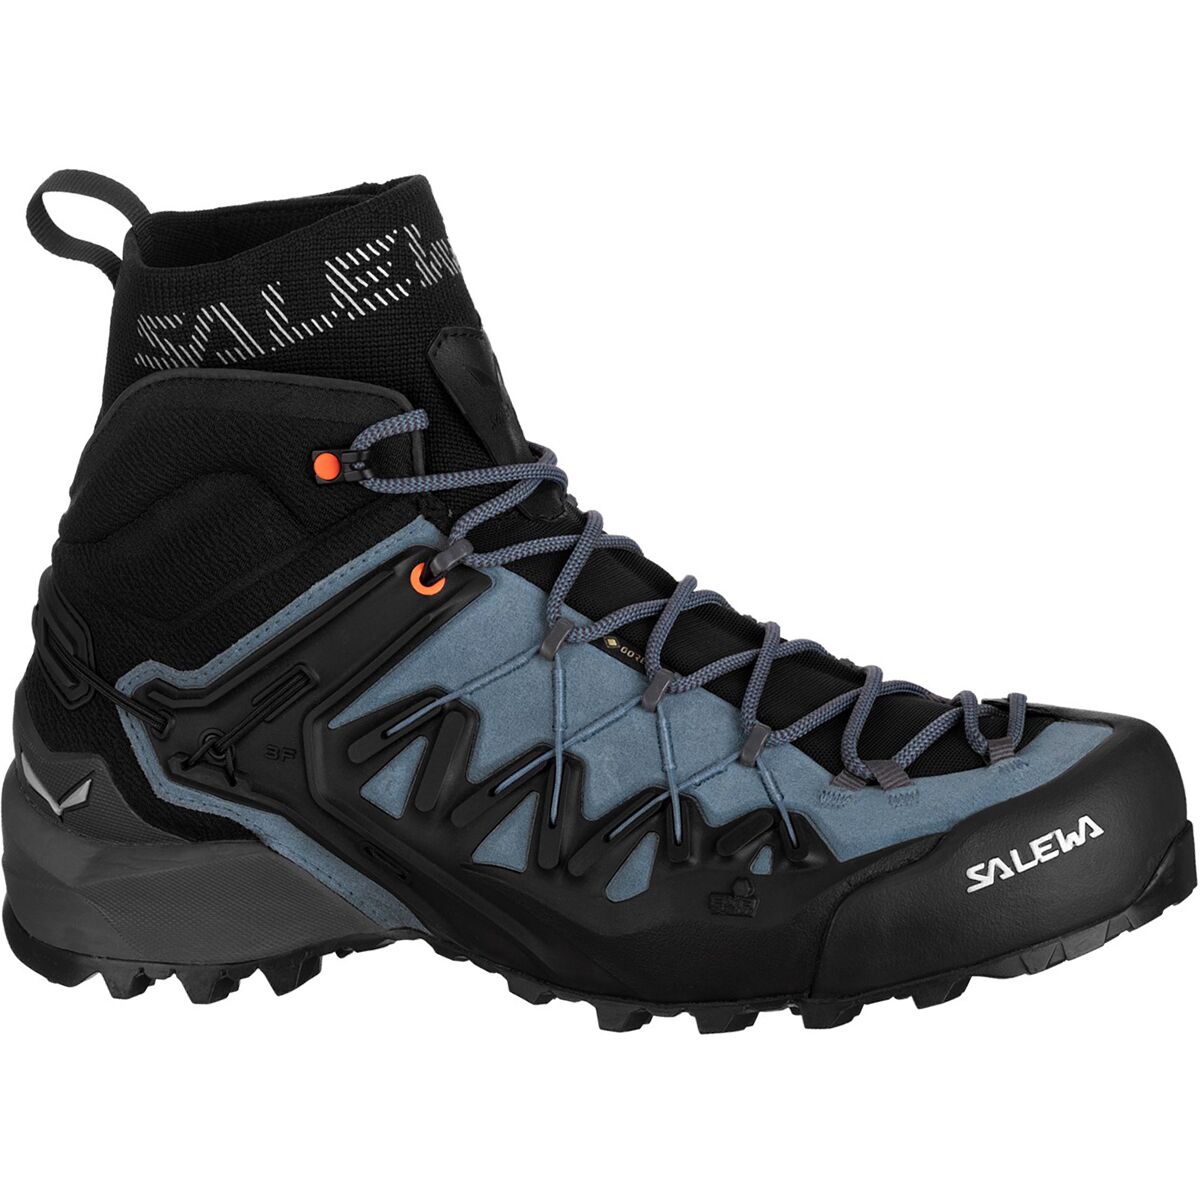 Salewa Wildfire Edge GTX Mid Hiking Boot - Men's - Footwear